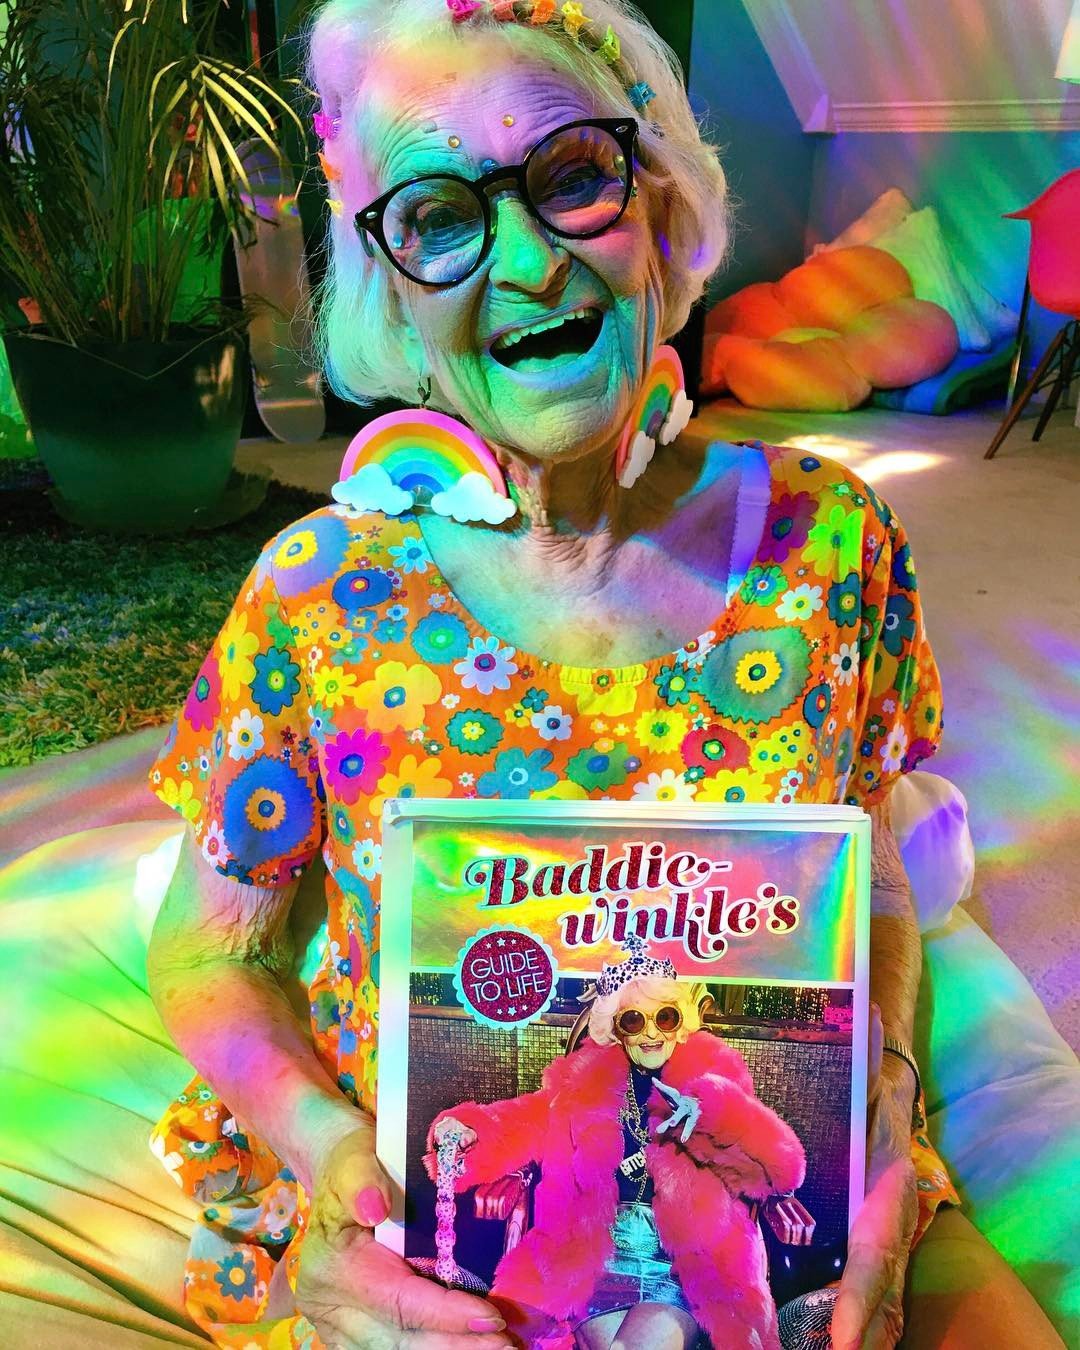 88-річна блогер Бадді Вінкль підкорила світ мегаяскравими нарядами - фото 325983